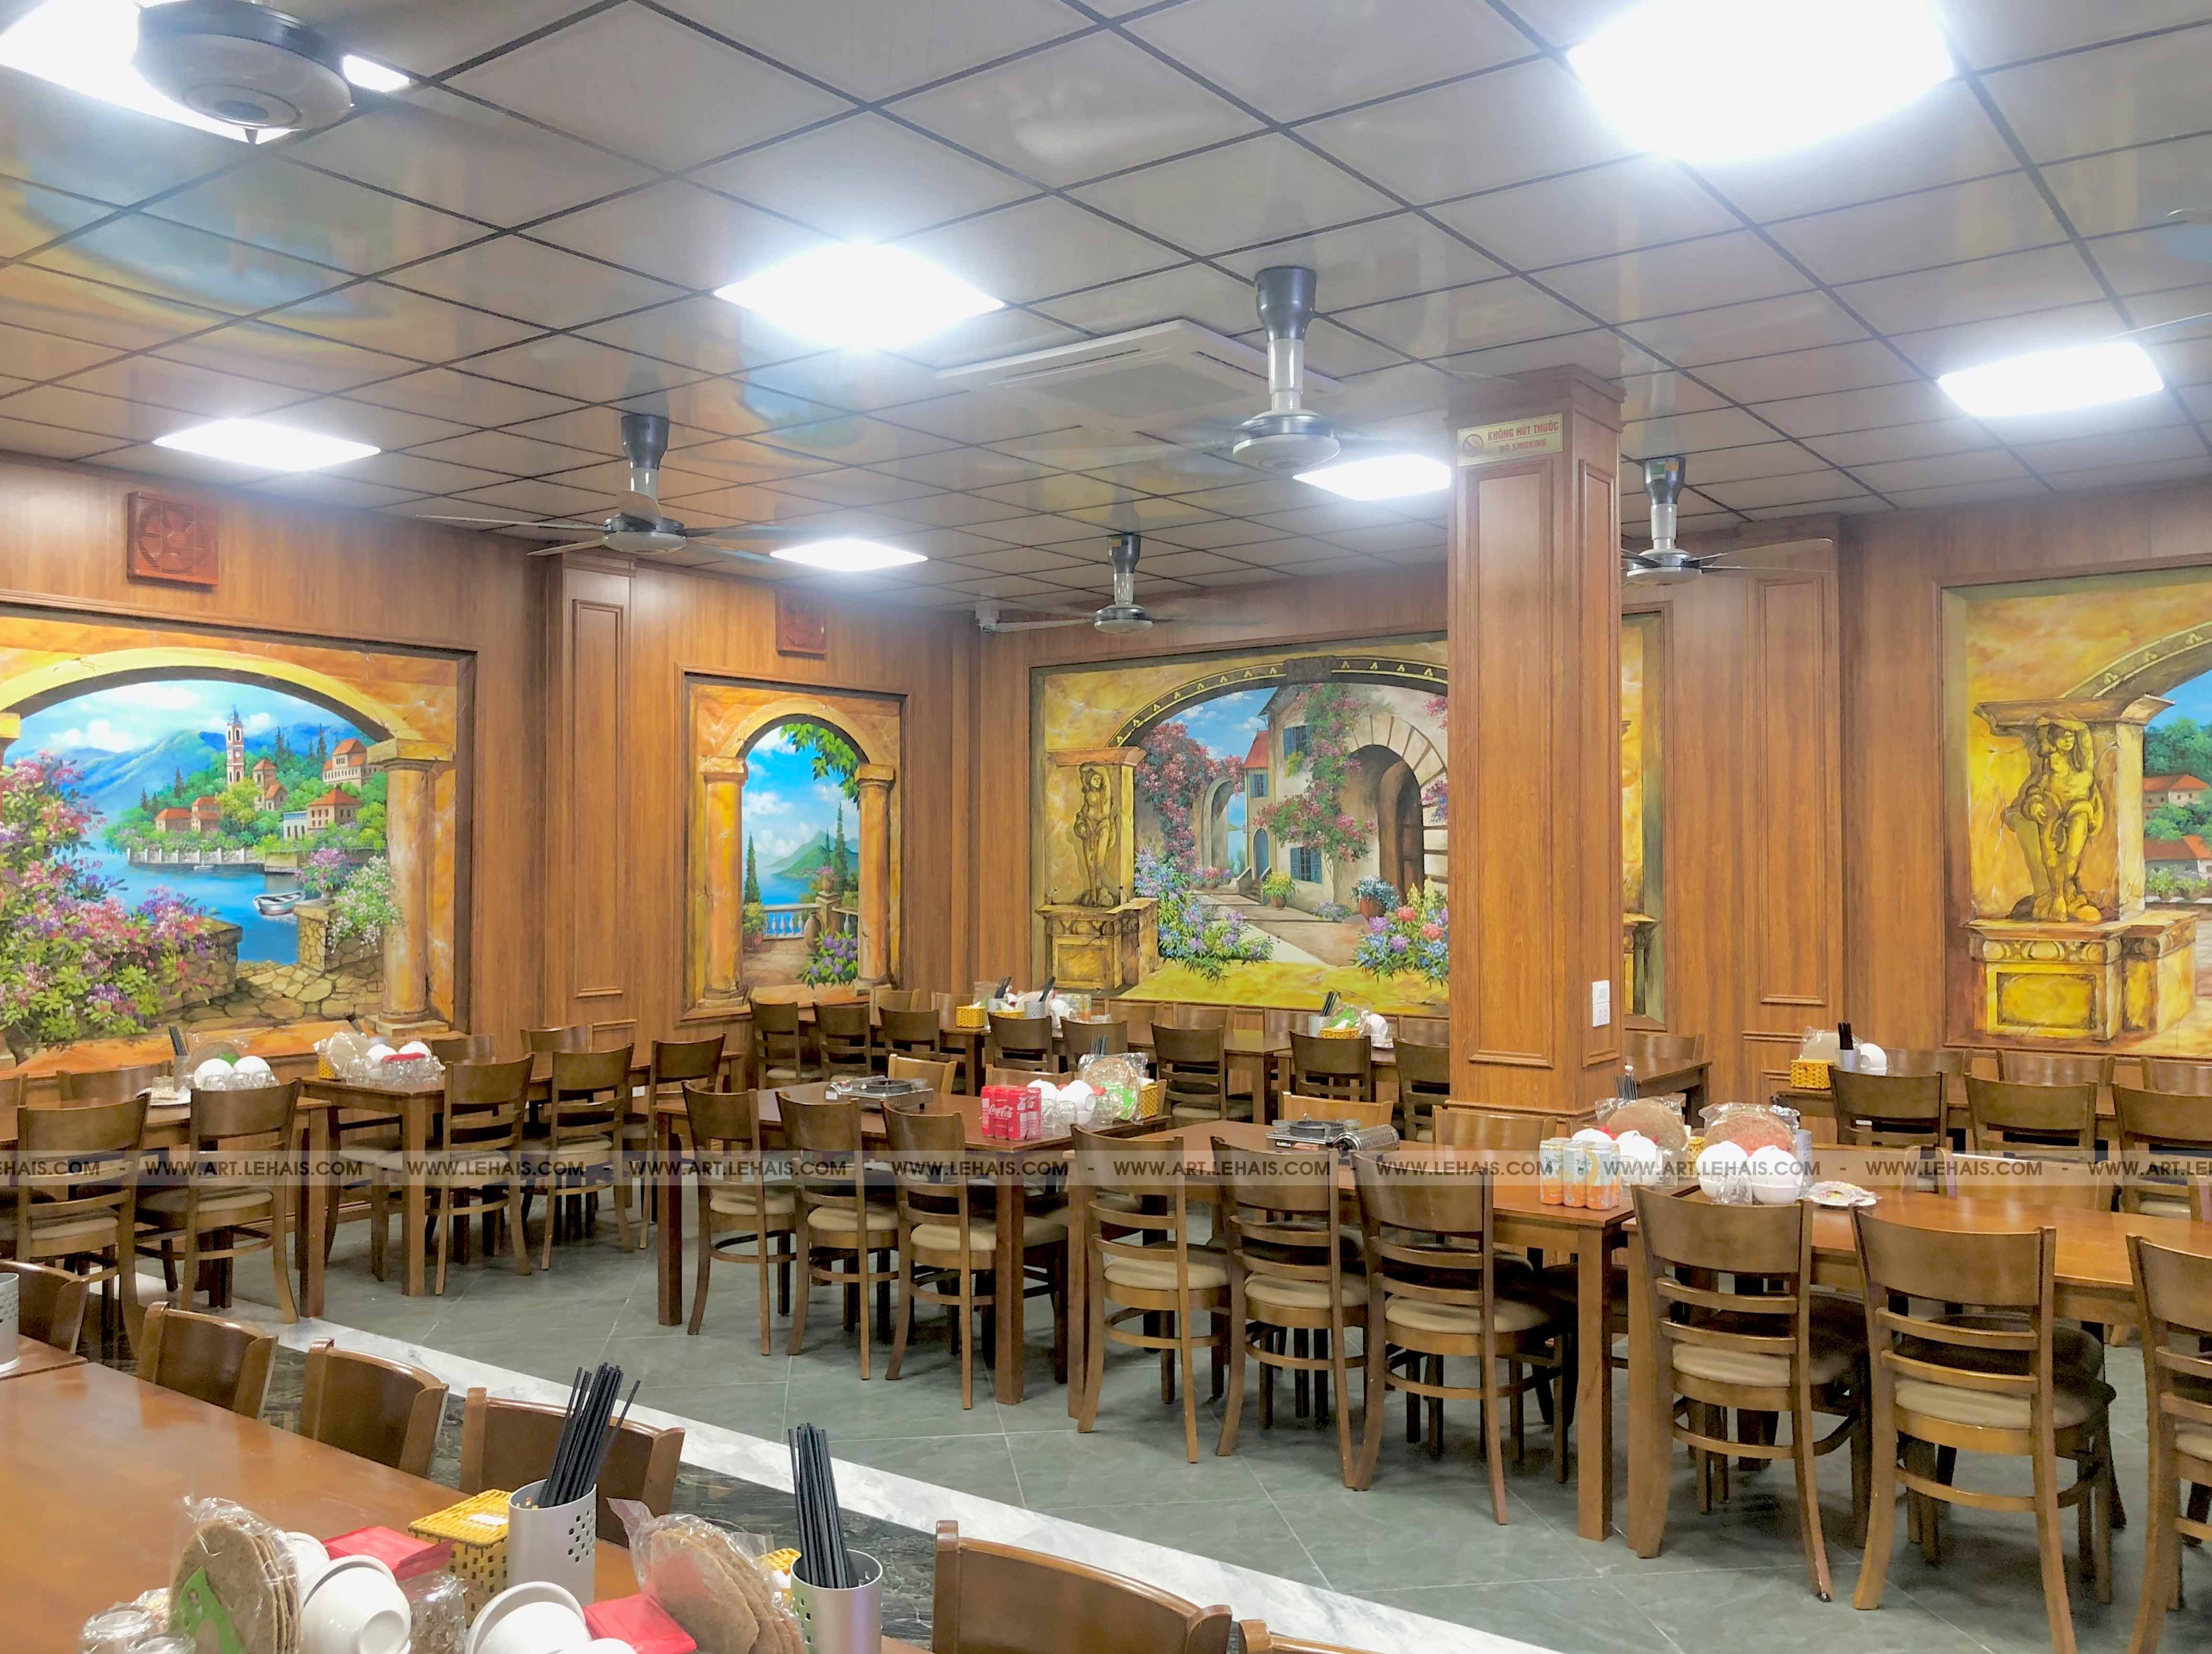 Vẽ tranh tường phong cảnh 3D tại nhà hàng Hùng Tàu ở Phố Nối, Mỹ Hào, Hưng Yên - TT188LHAR